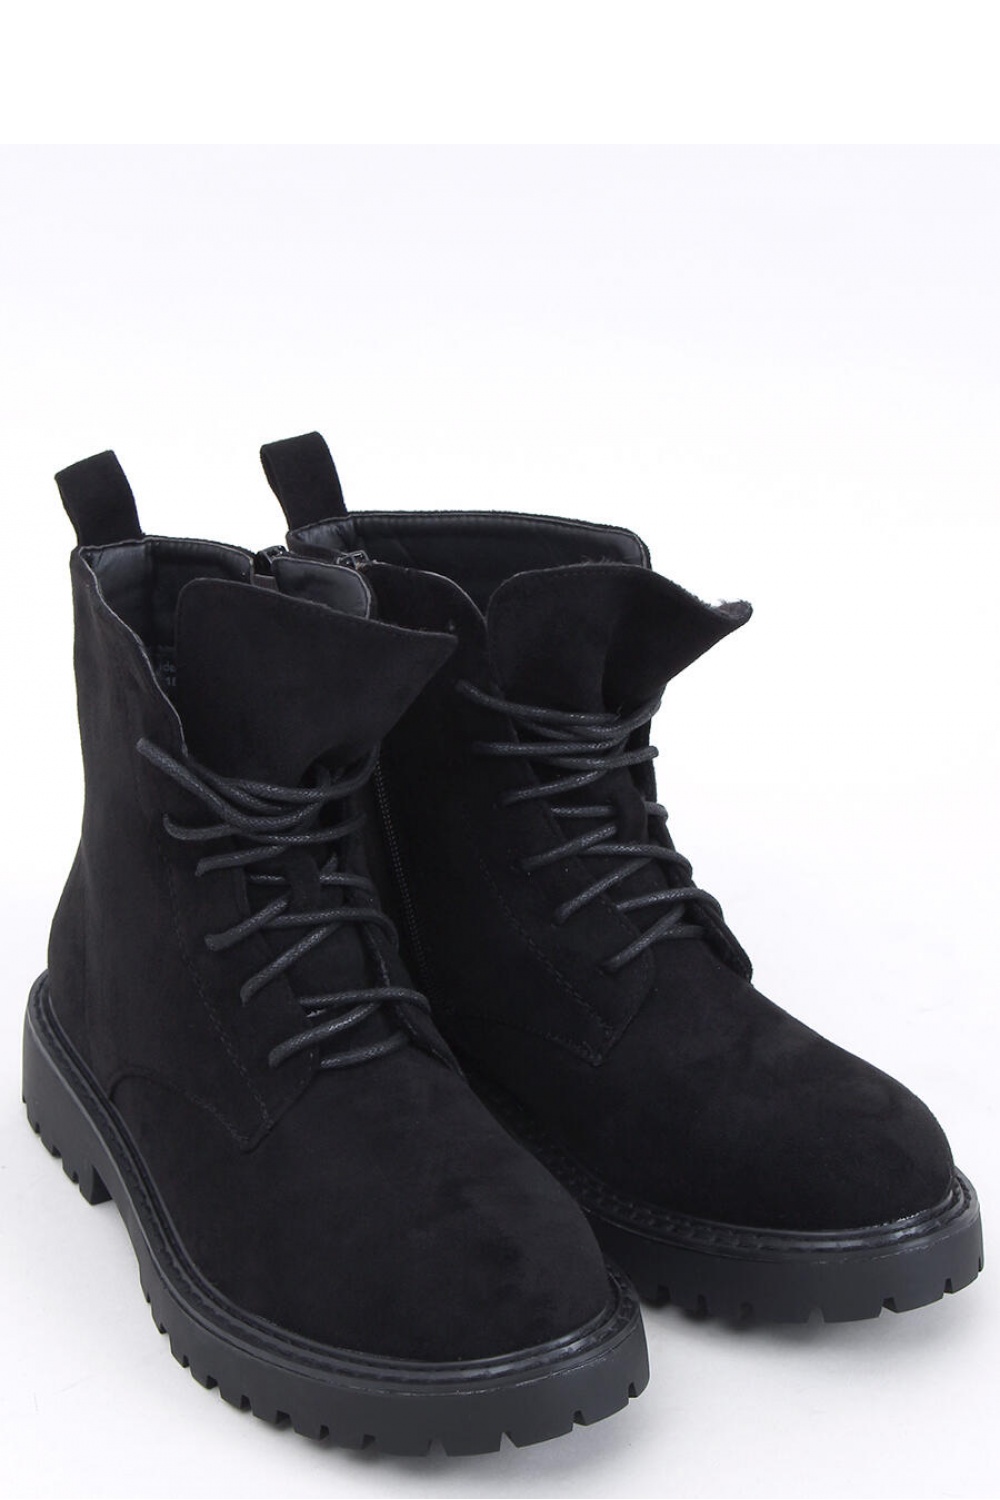  Boots model 170443 Inello  black